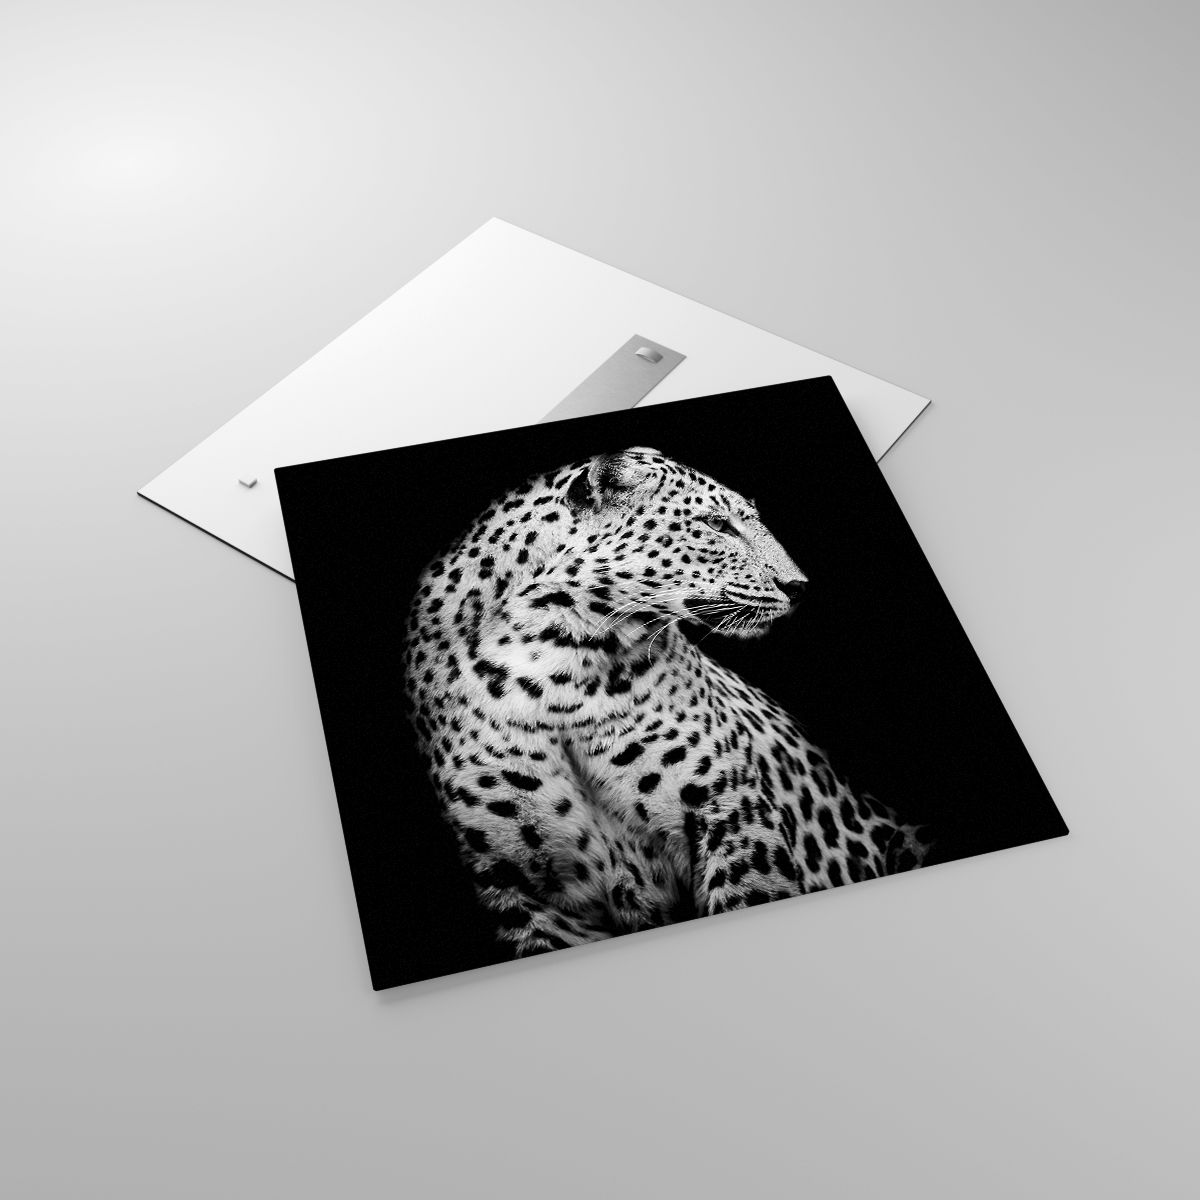 Glasbild Tiere, Glasbild Leopard, Glasbild Schwarz Und Weiß, Glasbild Raubtier, Glasbild Natur